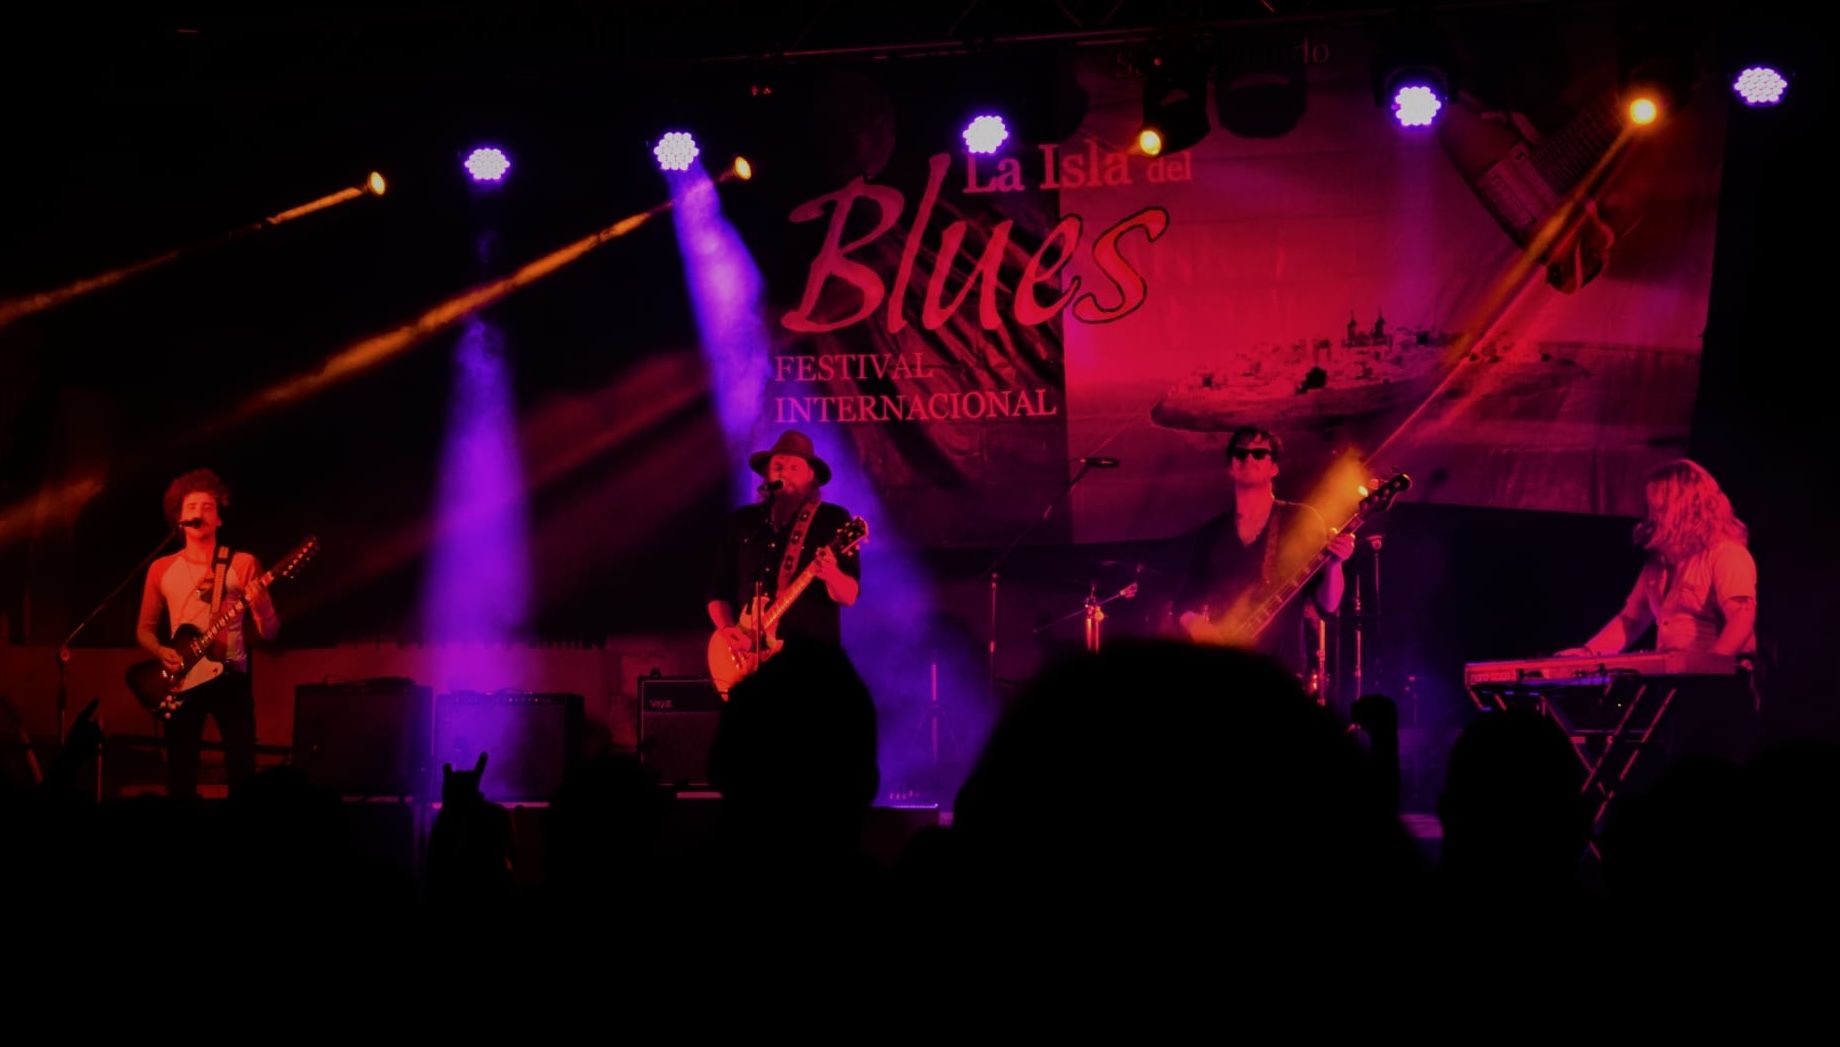 Un concierto de 'La Isla del blues', en una edición anterior.